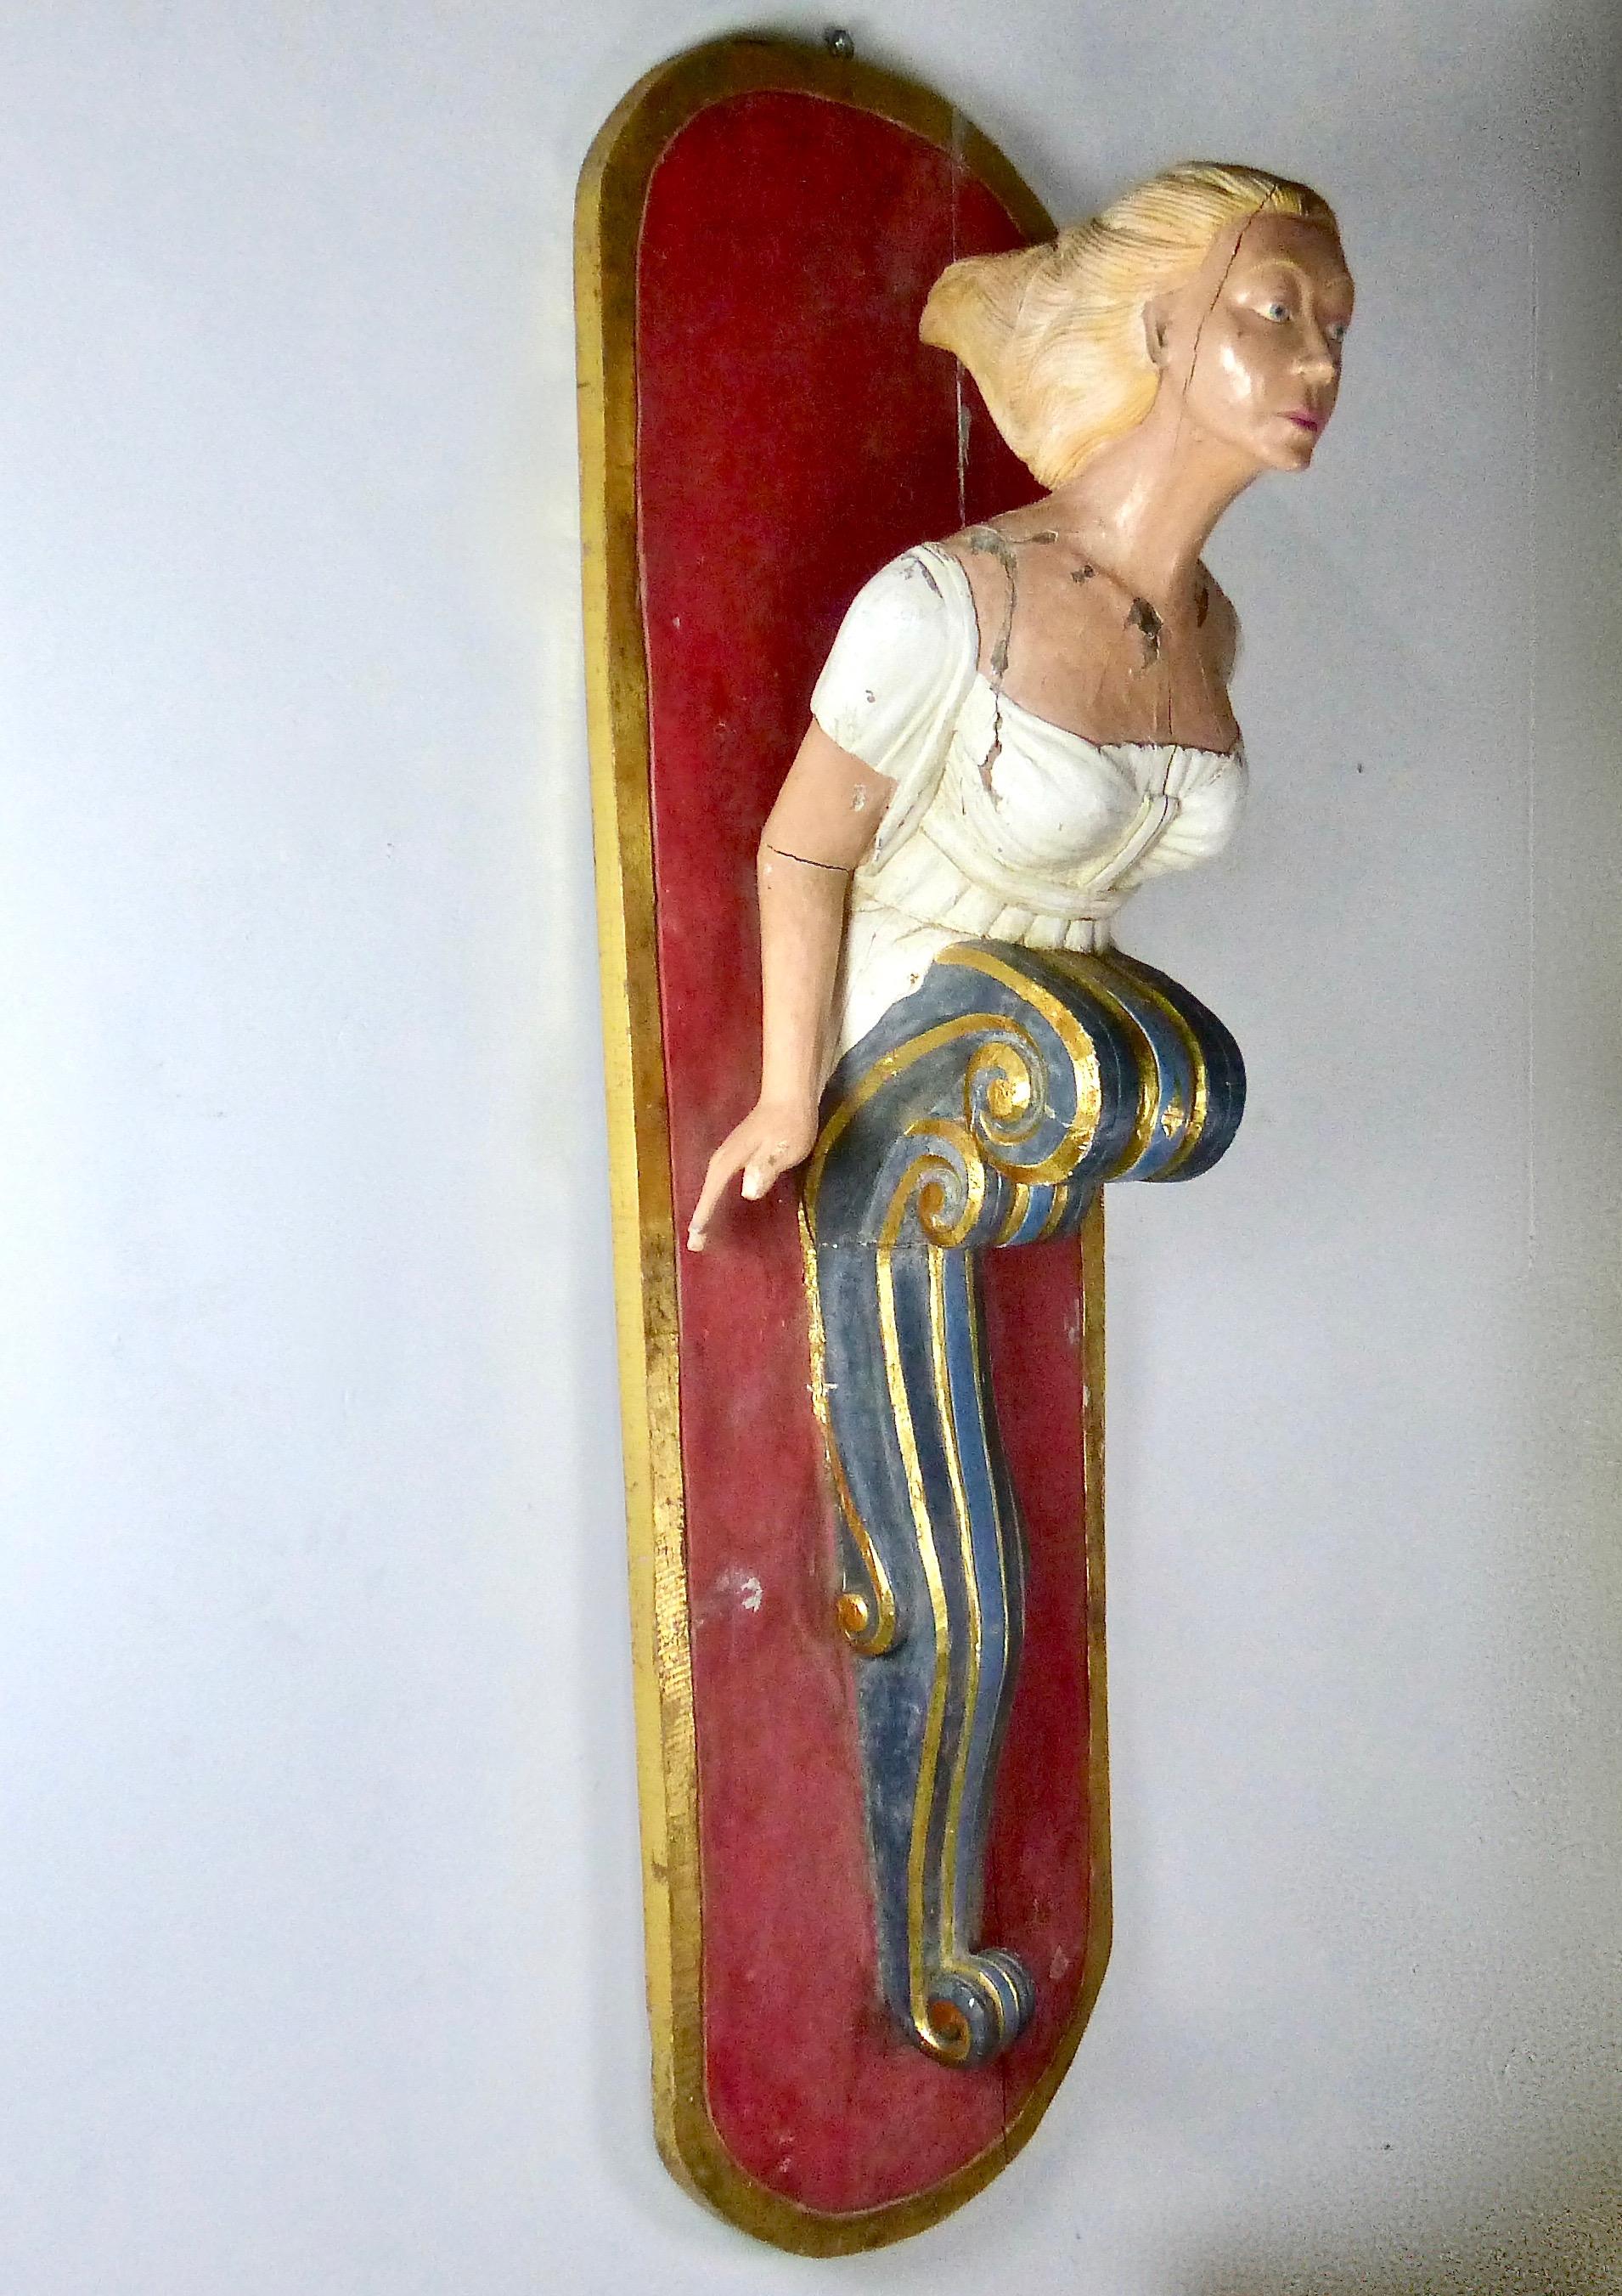 mermaid figurehead for sale